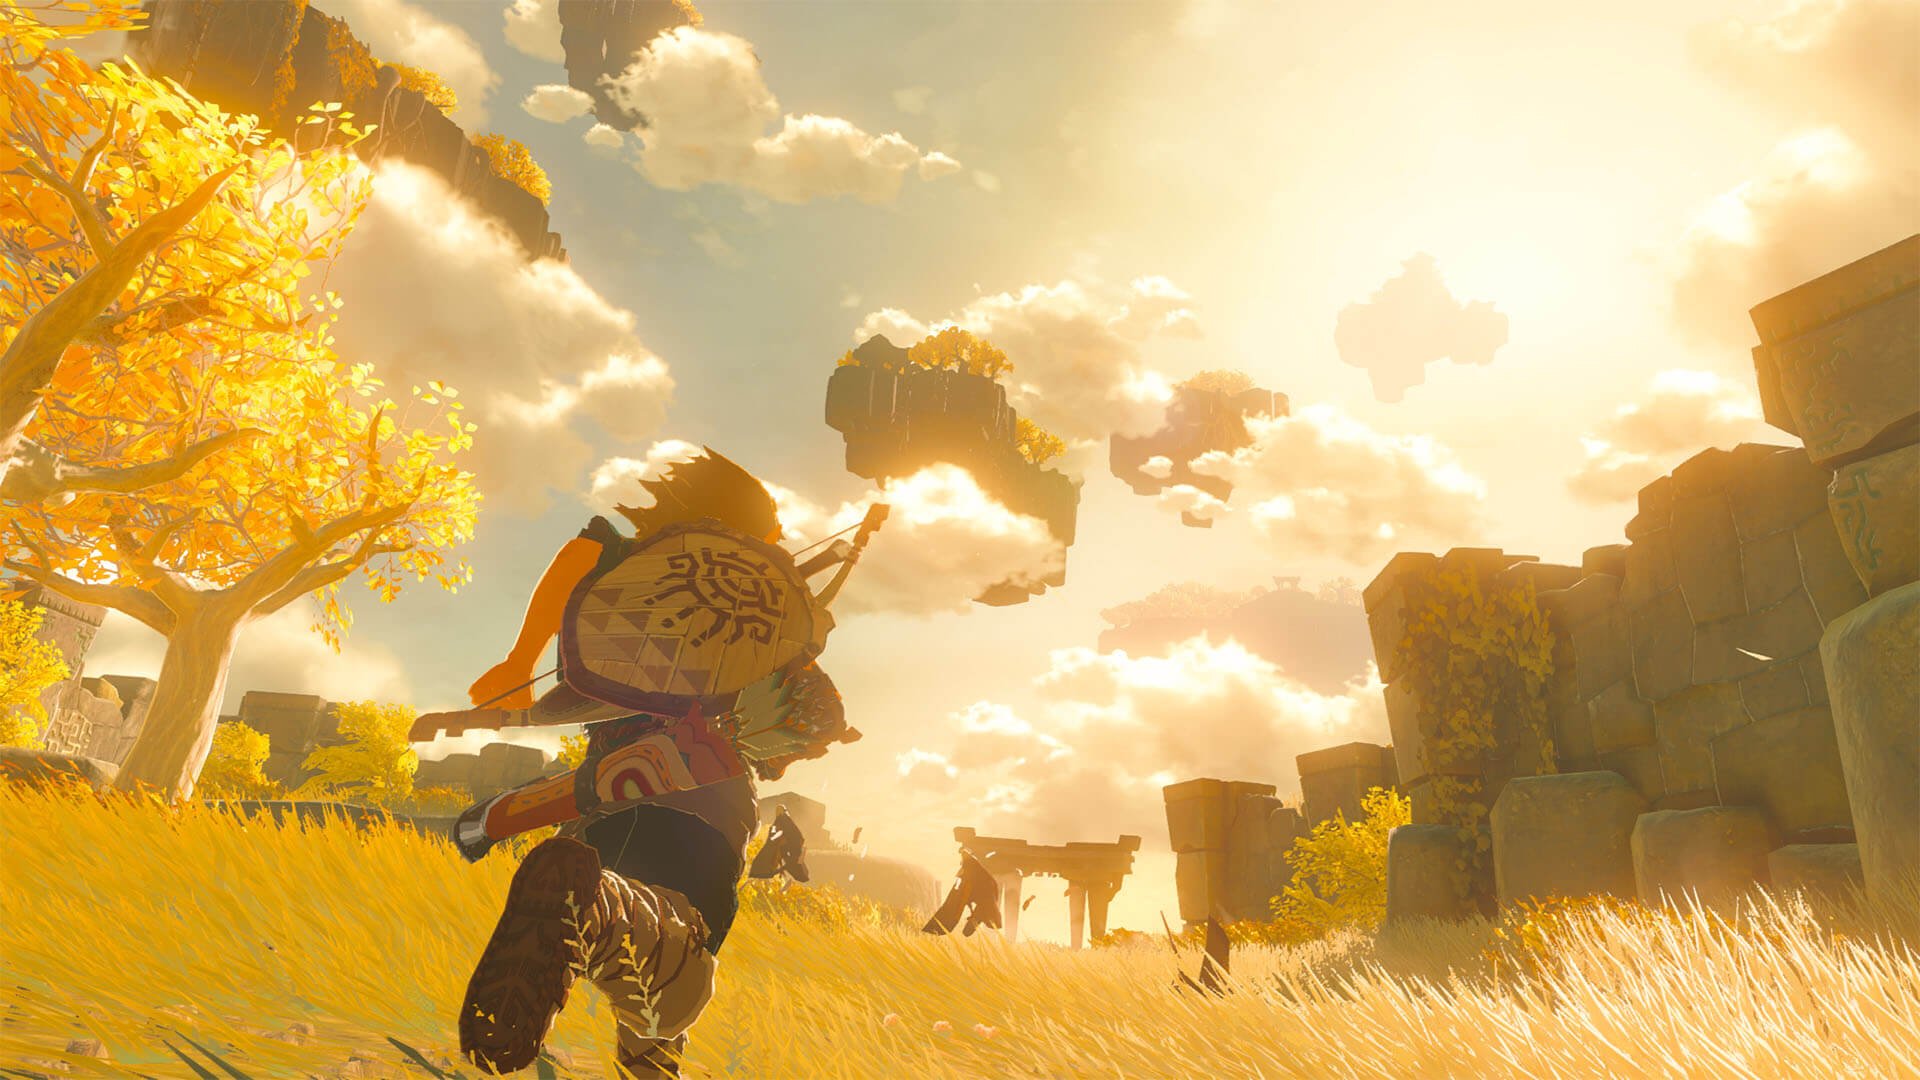 The Breath of the Wild devam filmi Nintendo tarafından üzerinde çalışılıyor